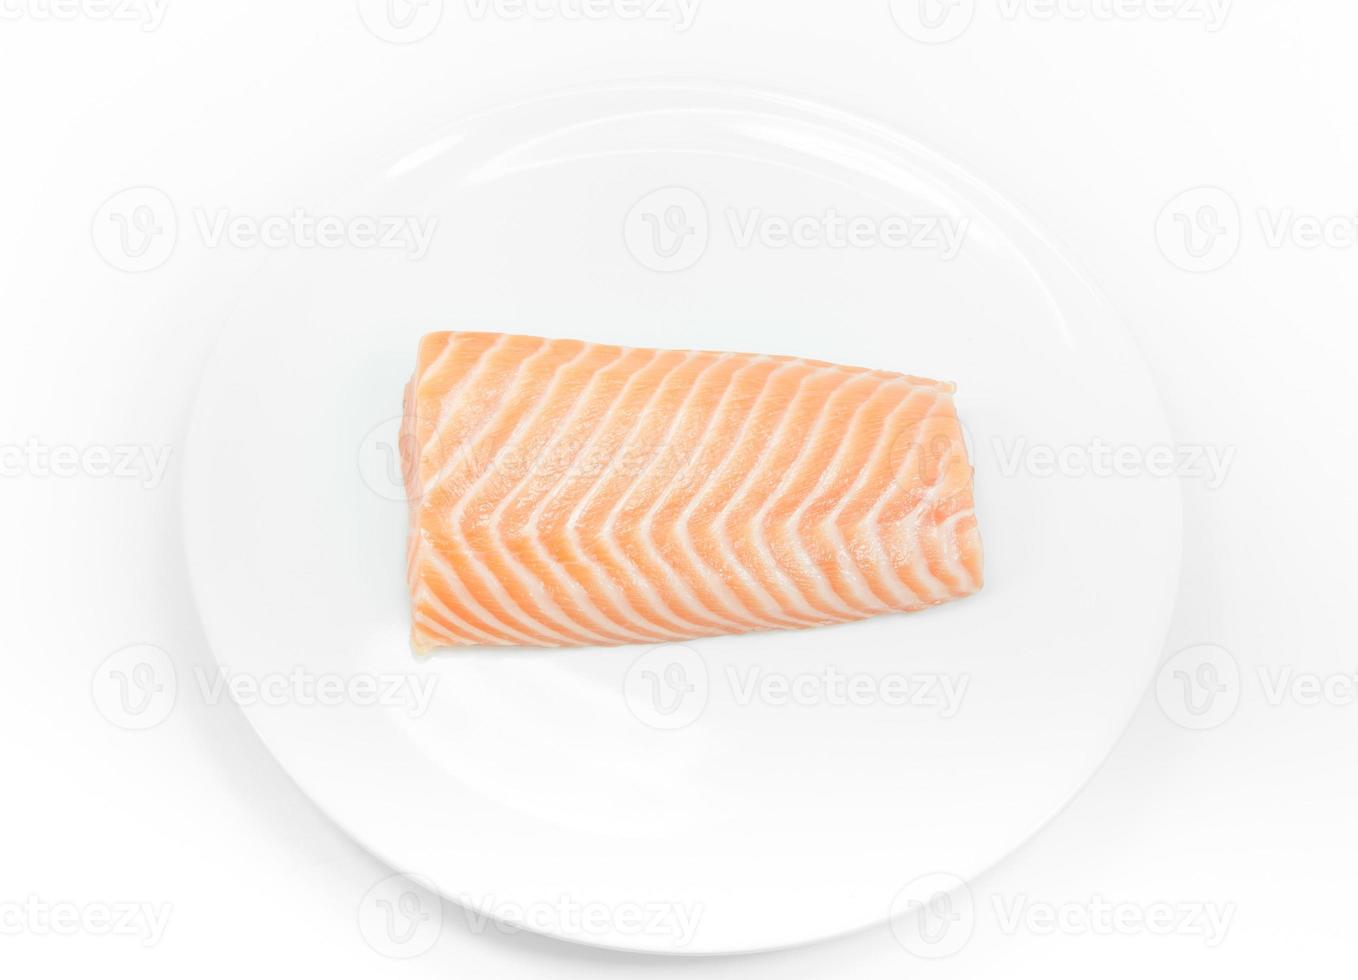 salmão de peixe cru no prato branco sobre fundo branco, bife de salmão foto